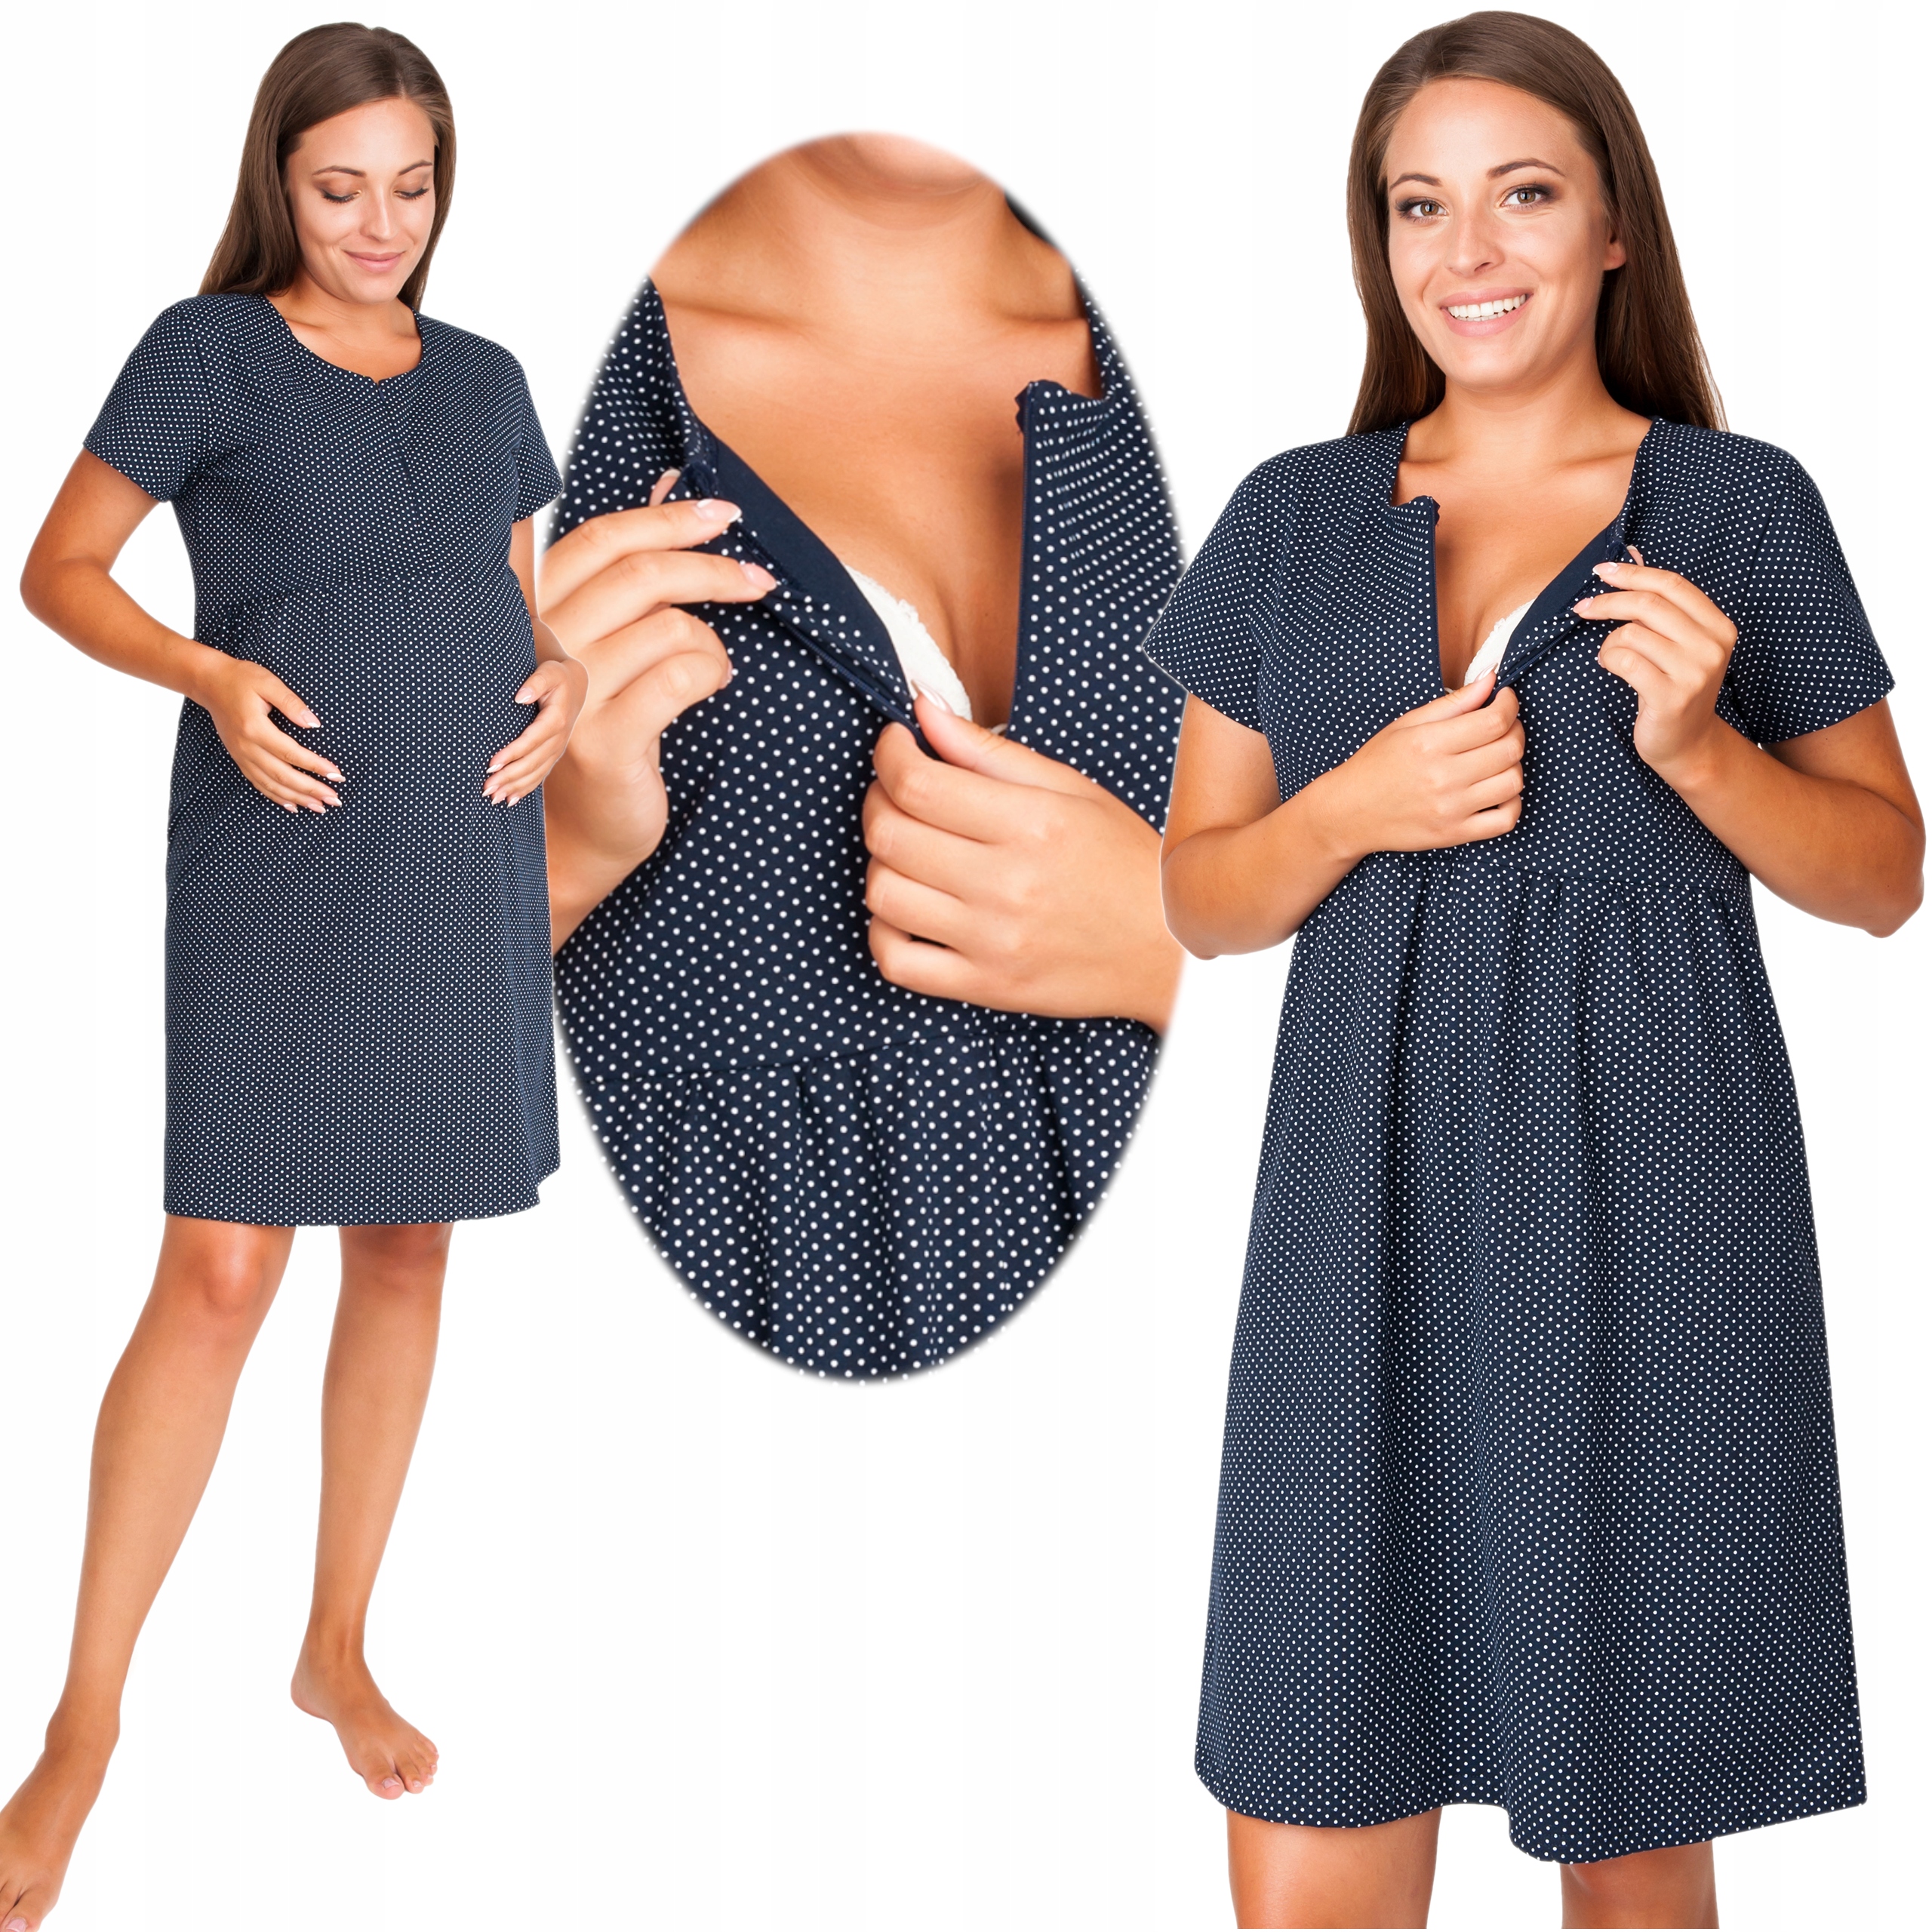 Koszula nocna ciążowa do karmienia piersią MACZEK